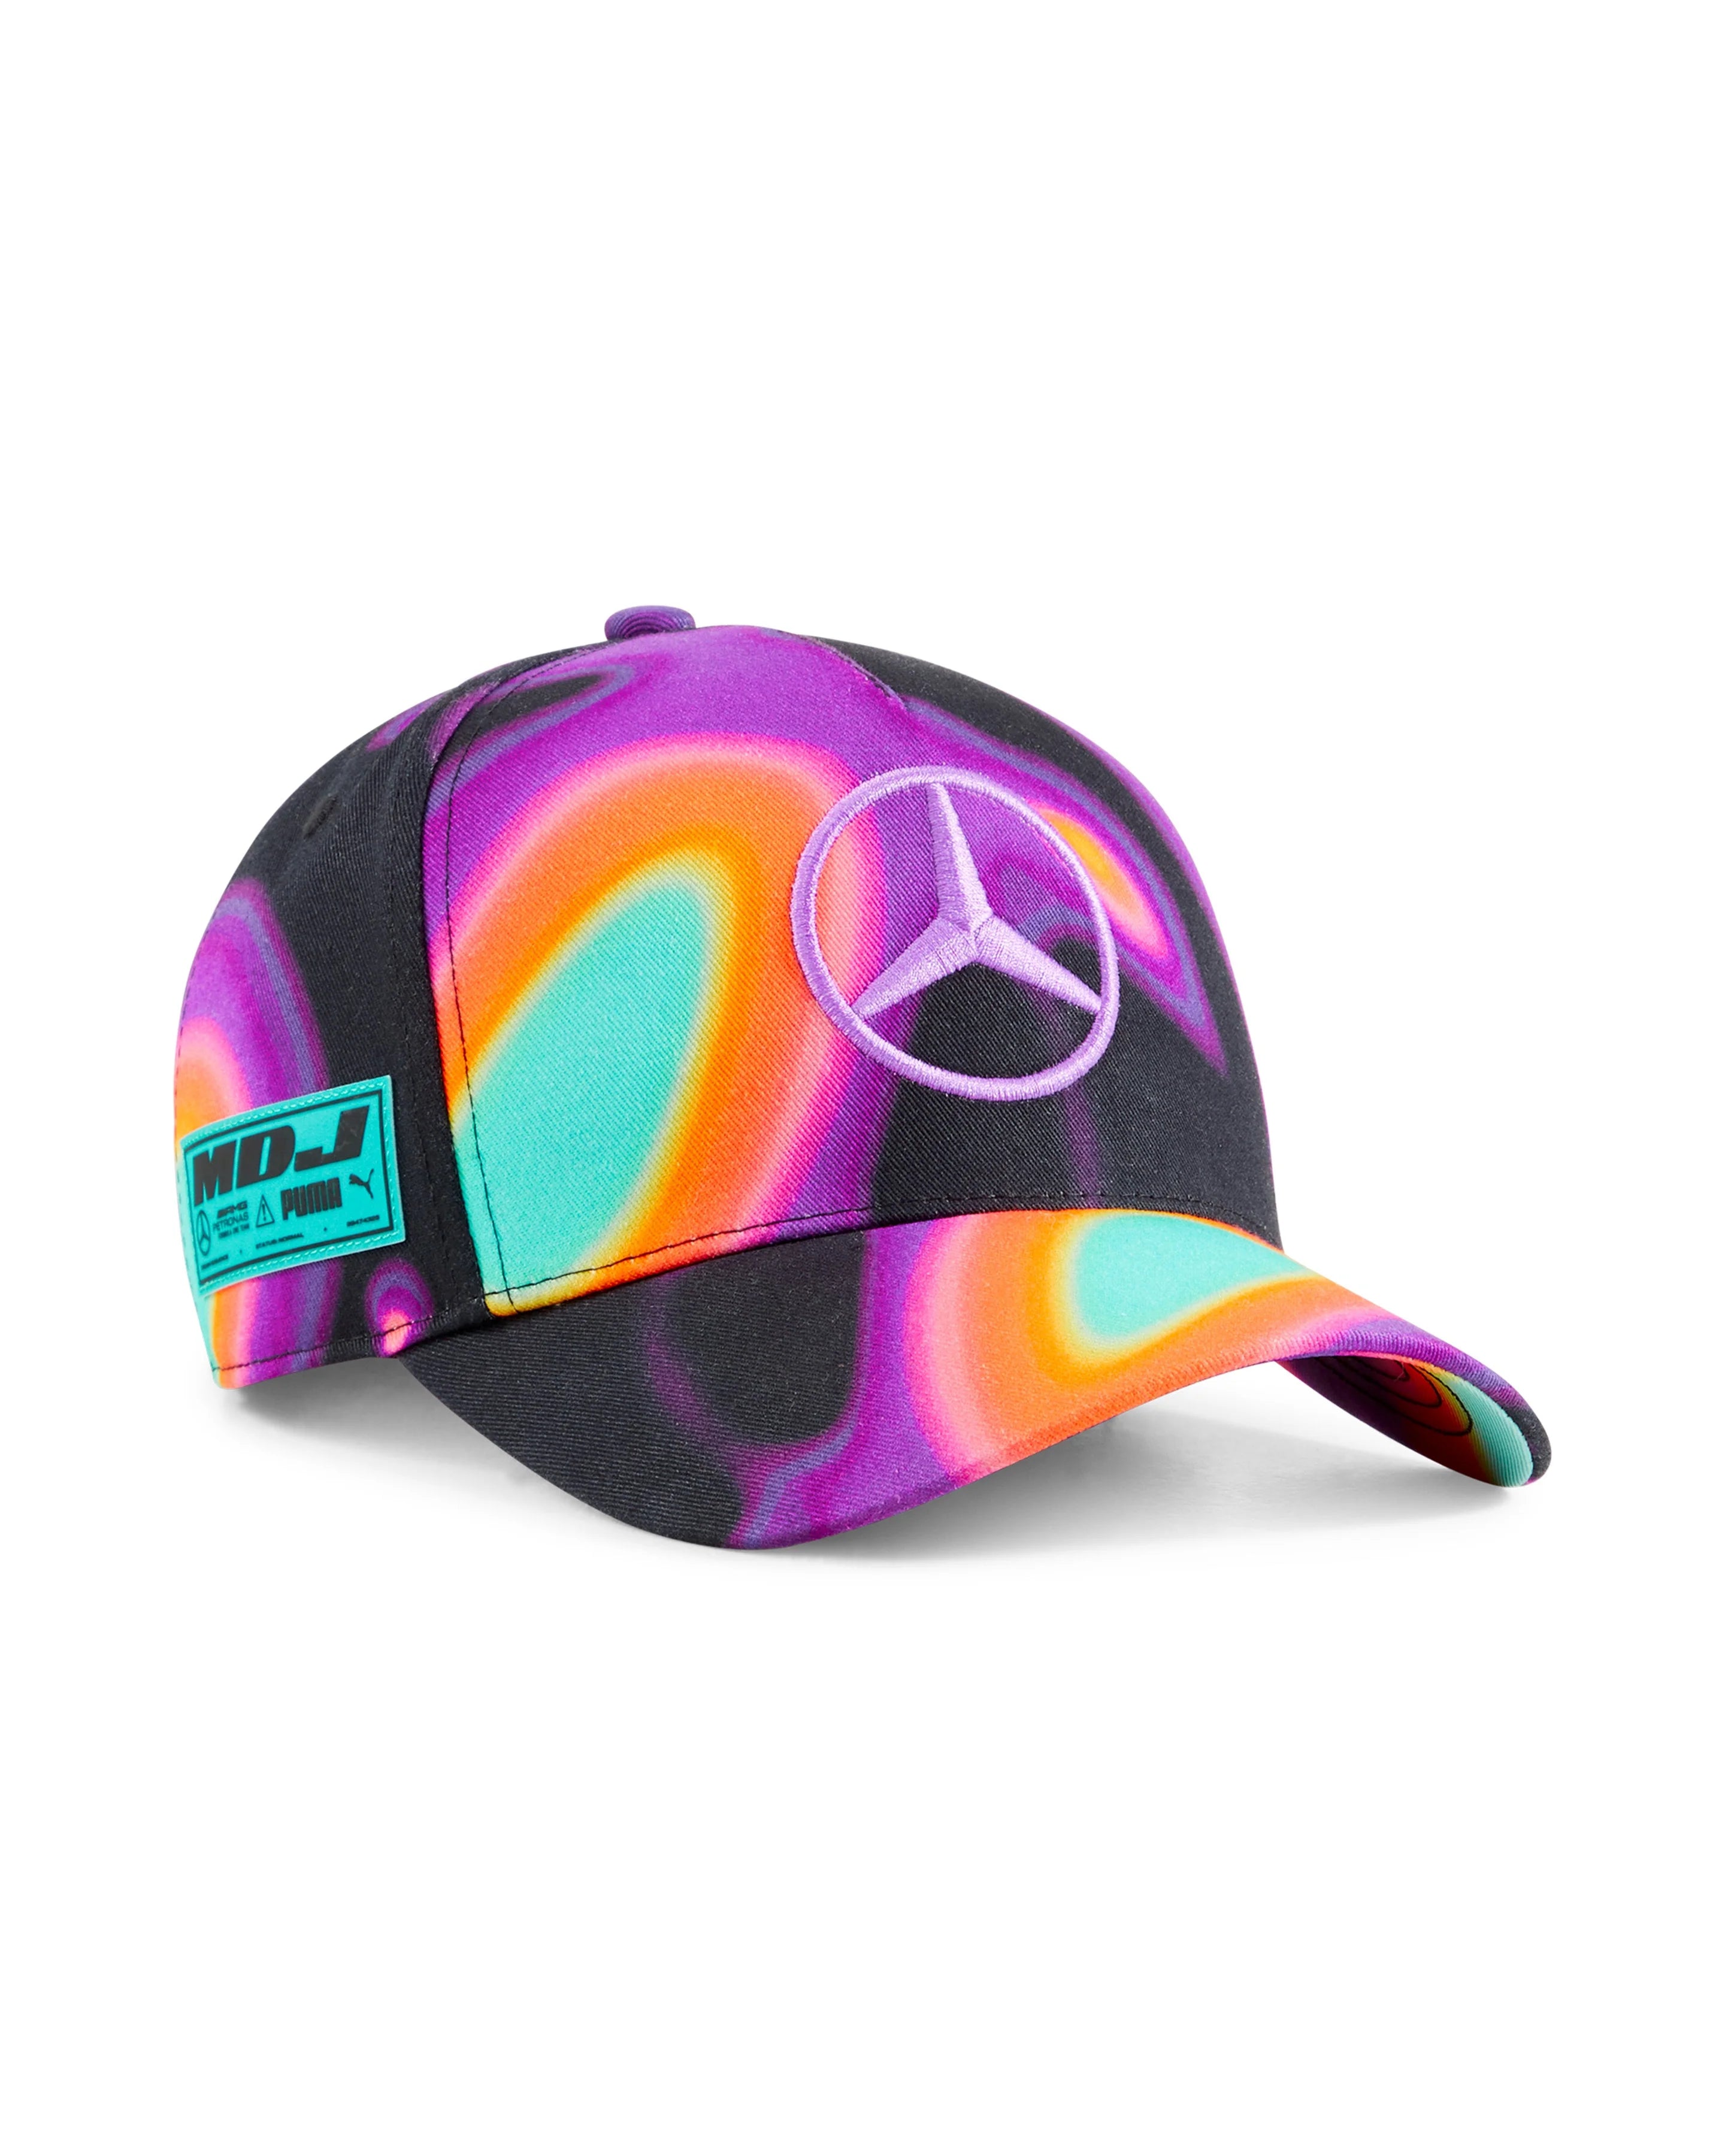 Mercedes-AMG F1 Lewis Hamilton Special Edition Miami GP Hat Multicolor